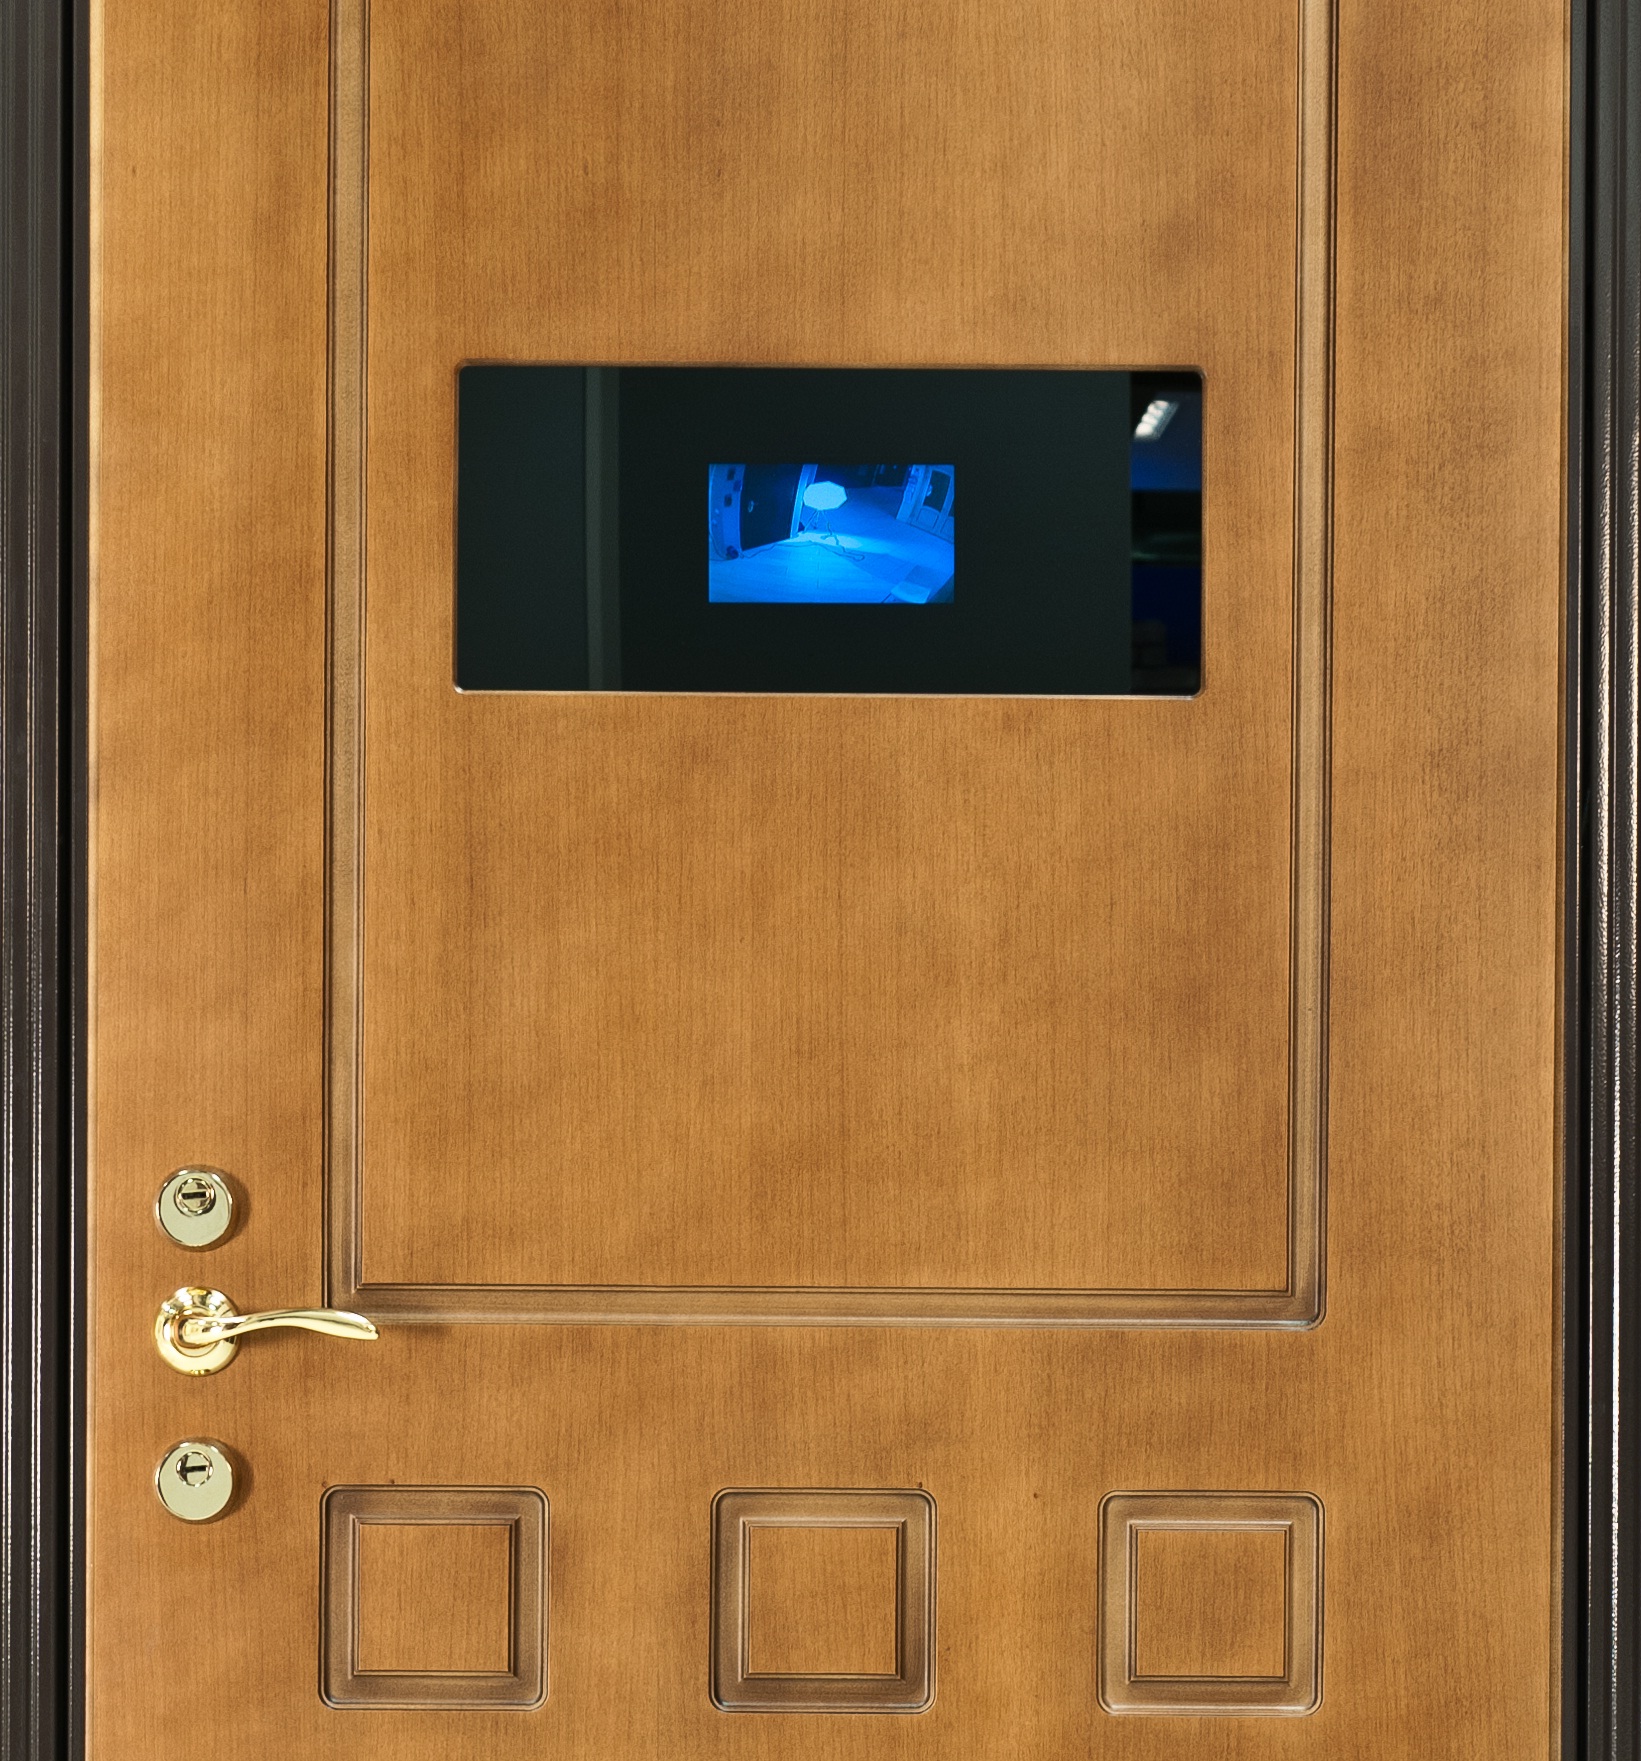 Зеркало на дверь с глазком. Входные двери с видеоглазком и монитором. Входная дверь с видеонаблюдением. Входная дверь со встроенным видеодомофоном. Дверь со встроенной камерой.